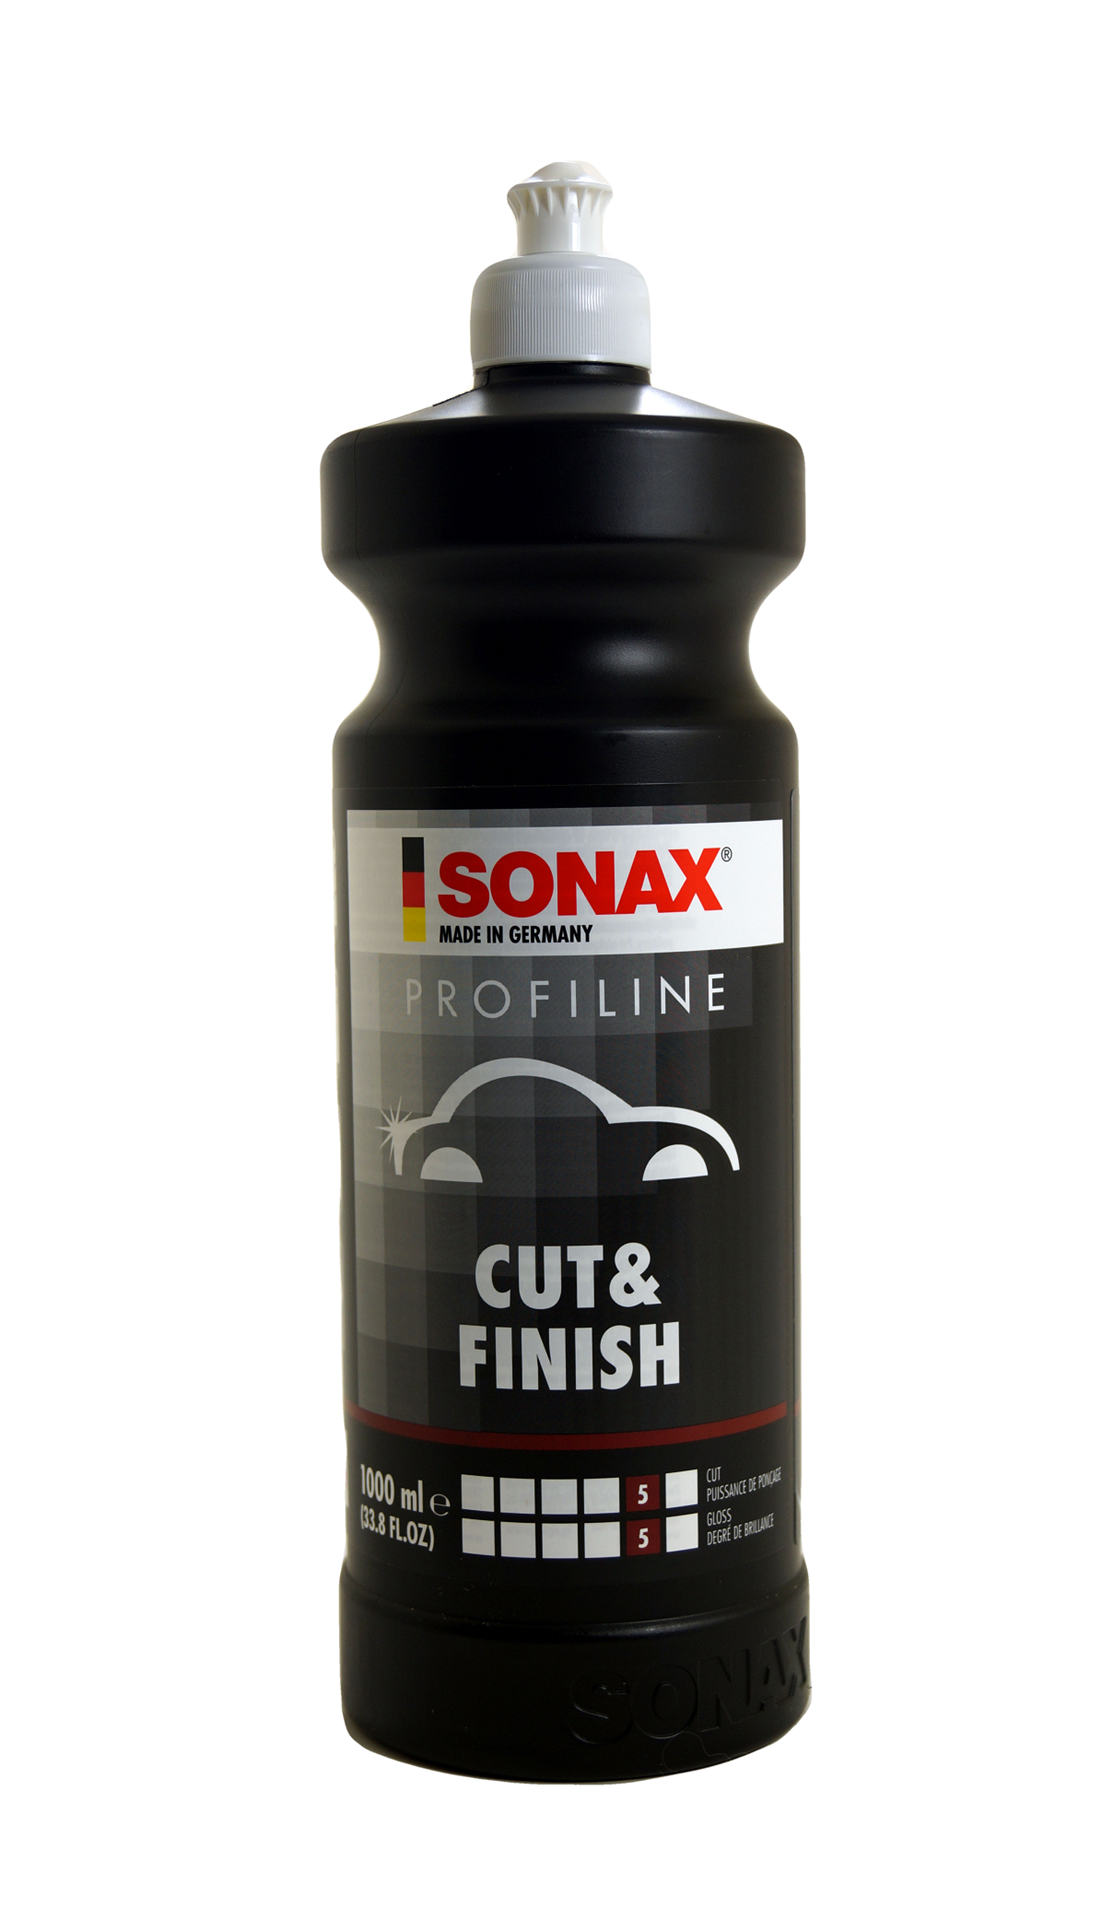 Sonax Cut & Finish